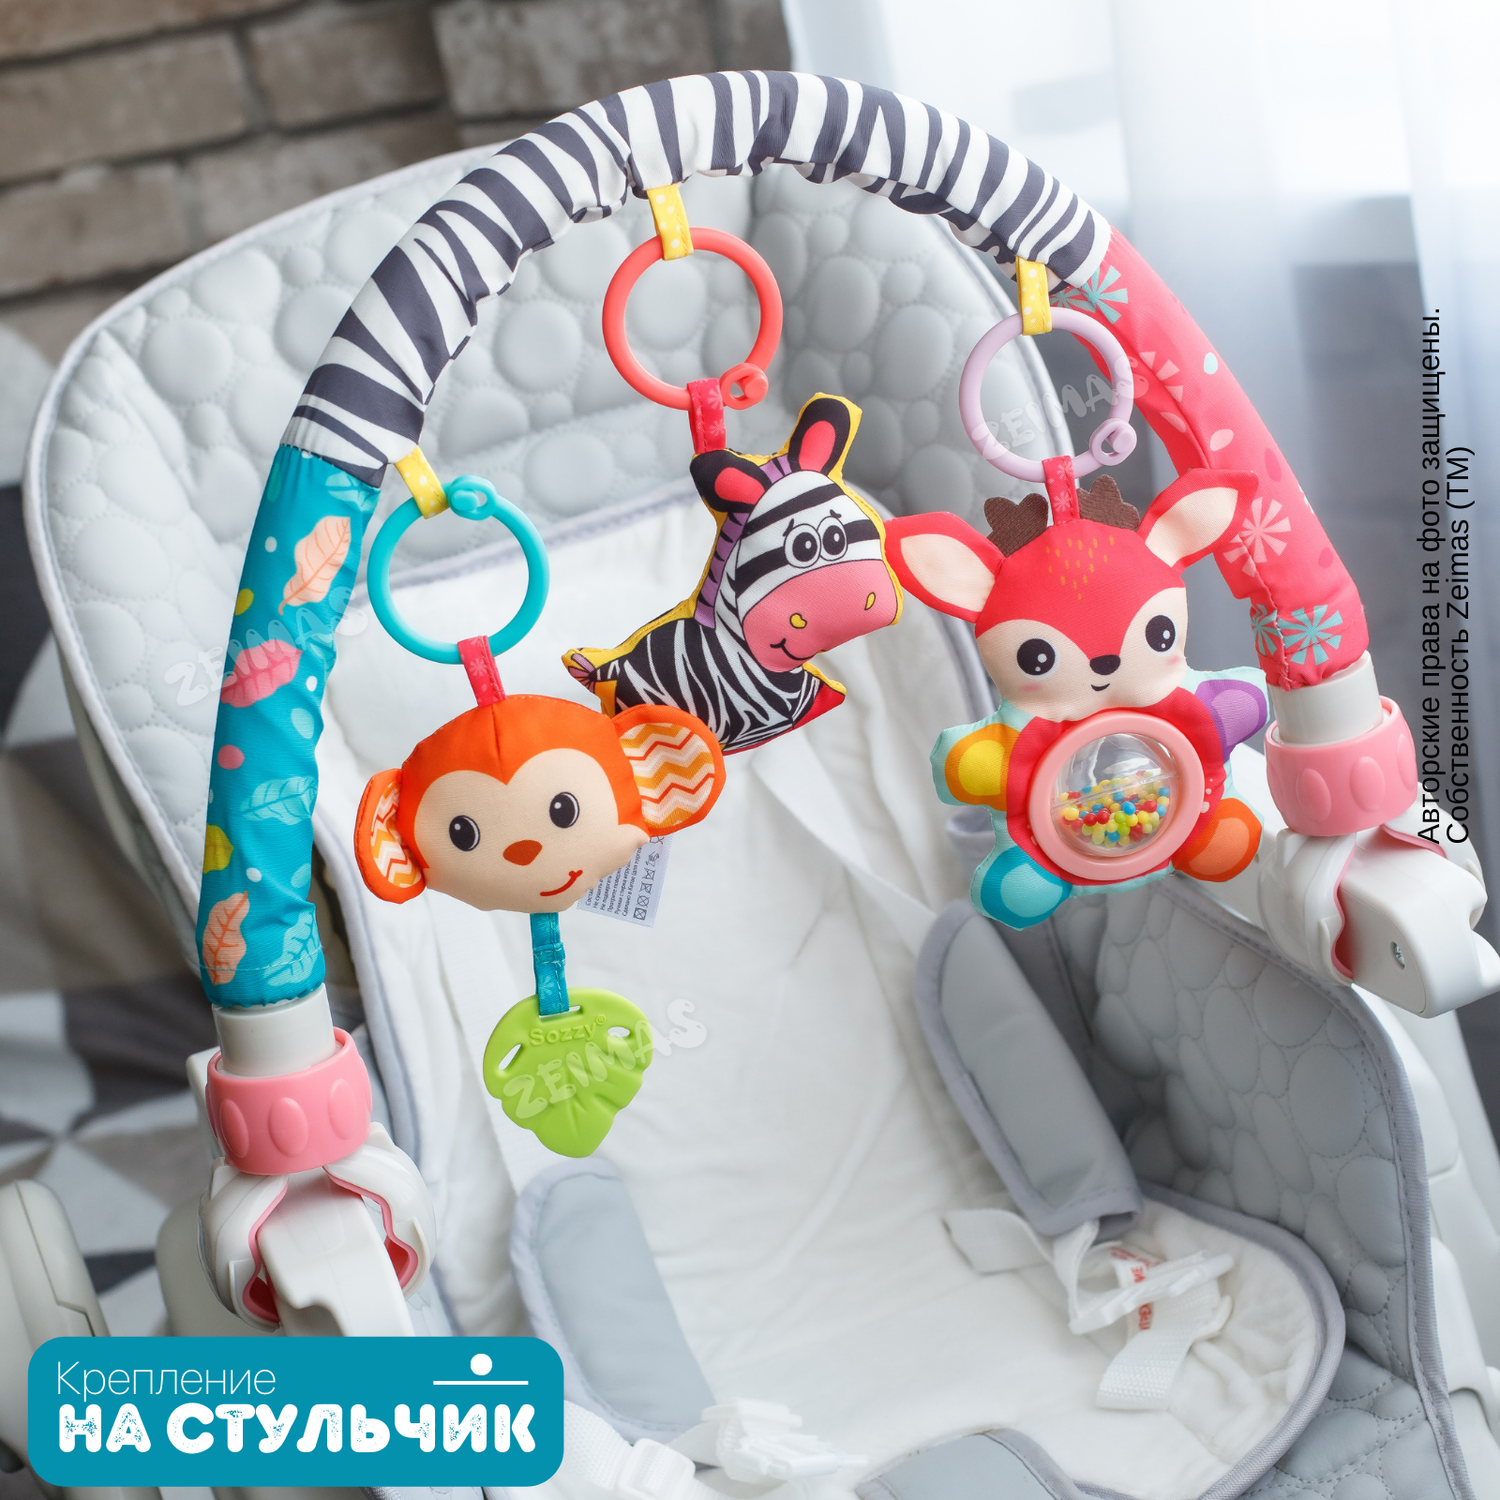 Дуга игровая с игрушками Zeimas Обезьянка музыкальная развивающая подвеска на коляску и кроватку - фото 16